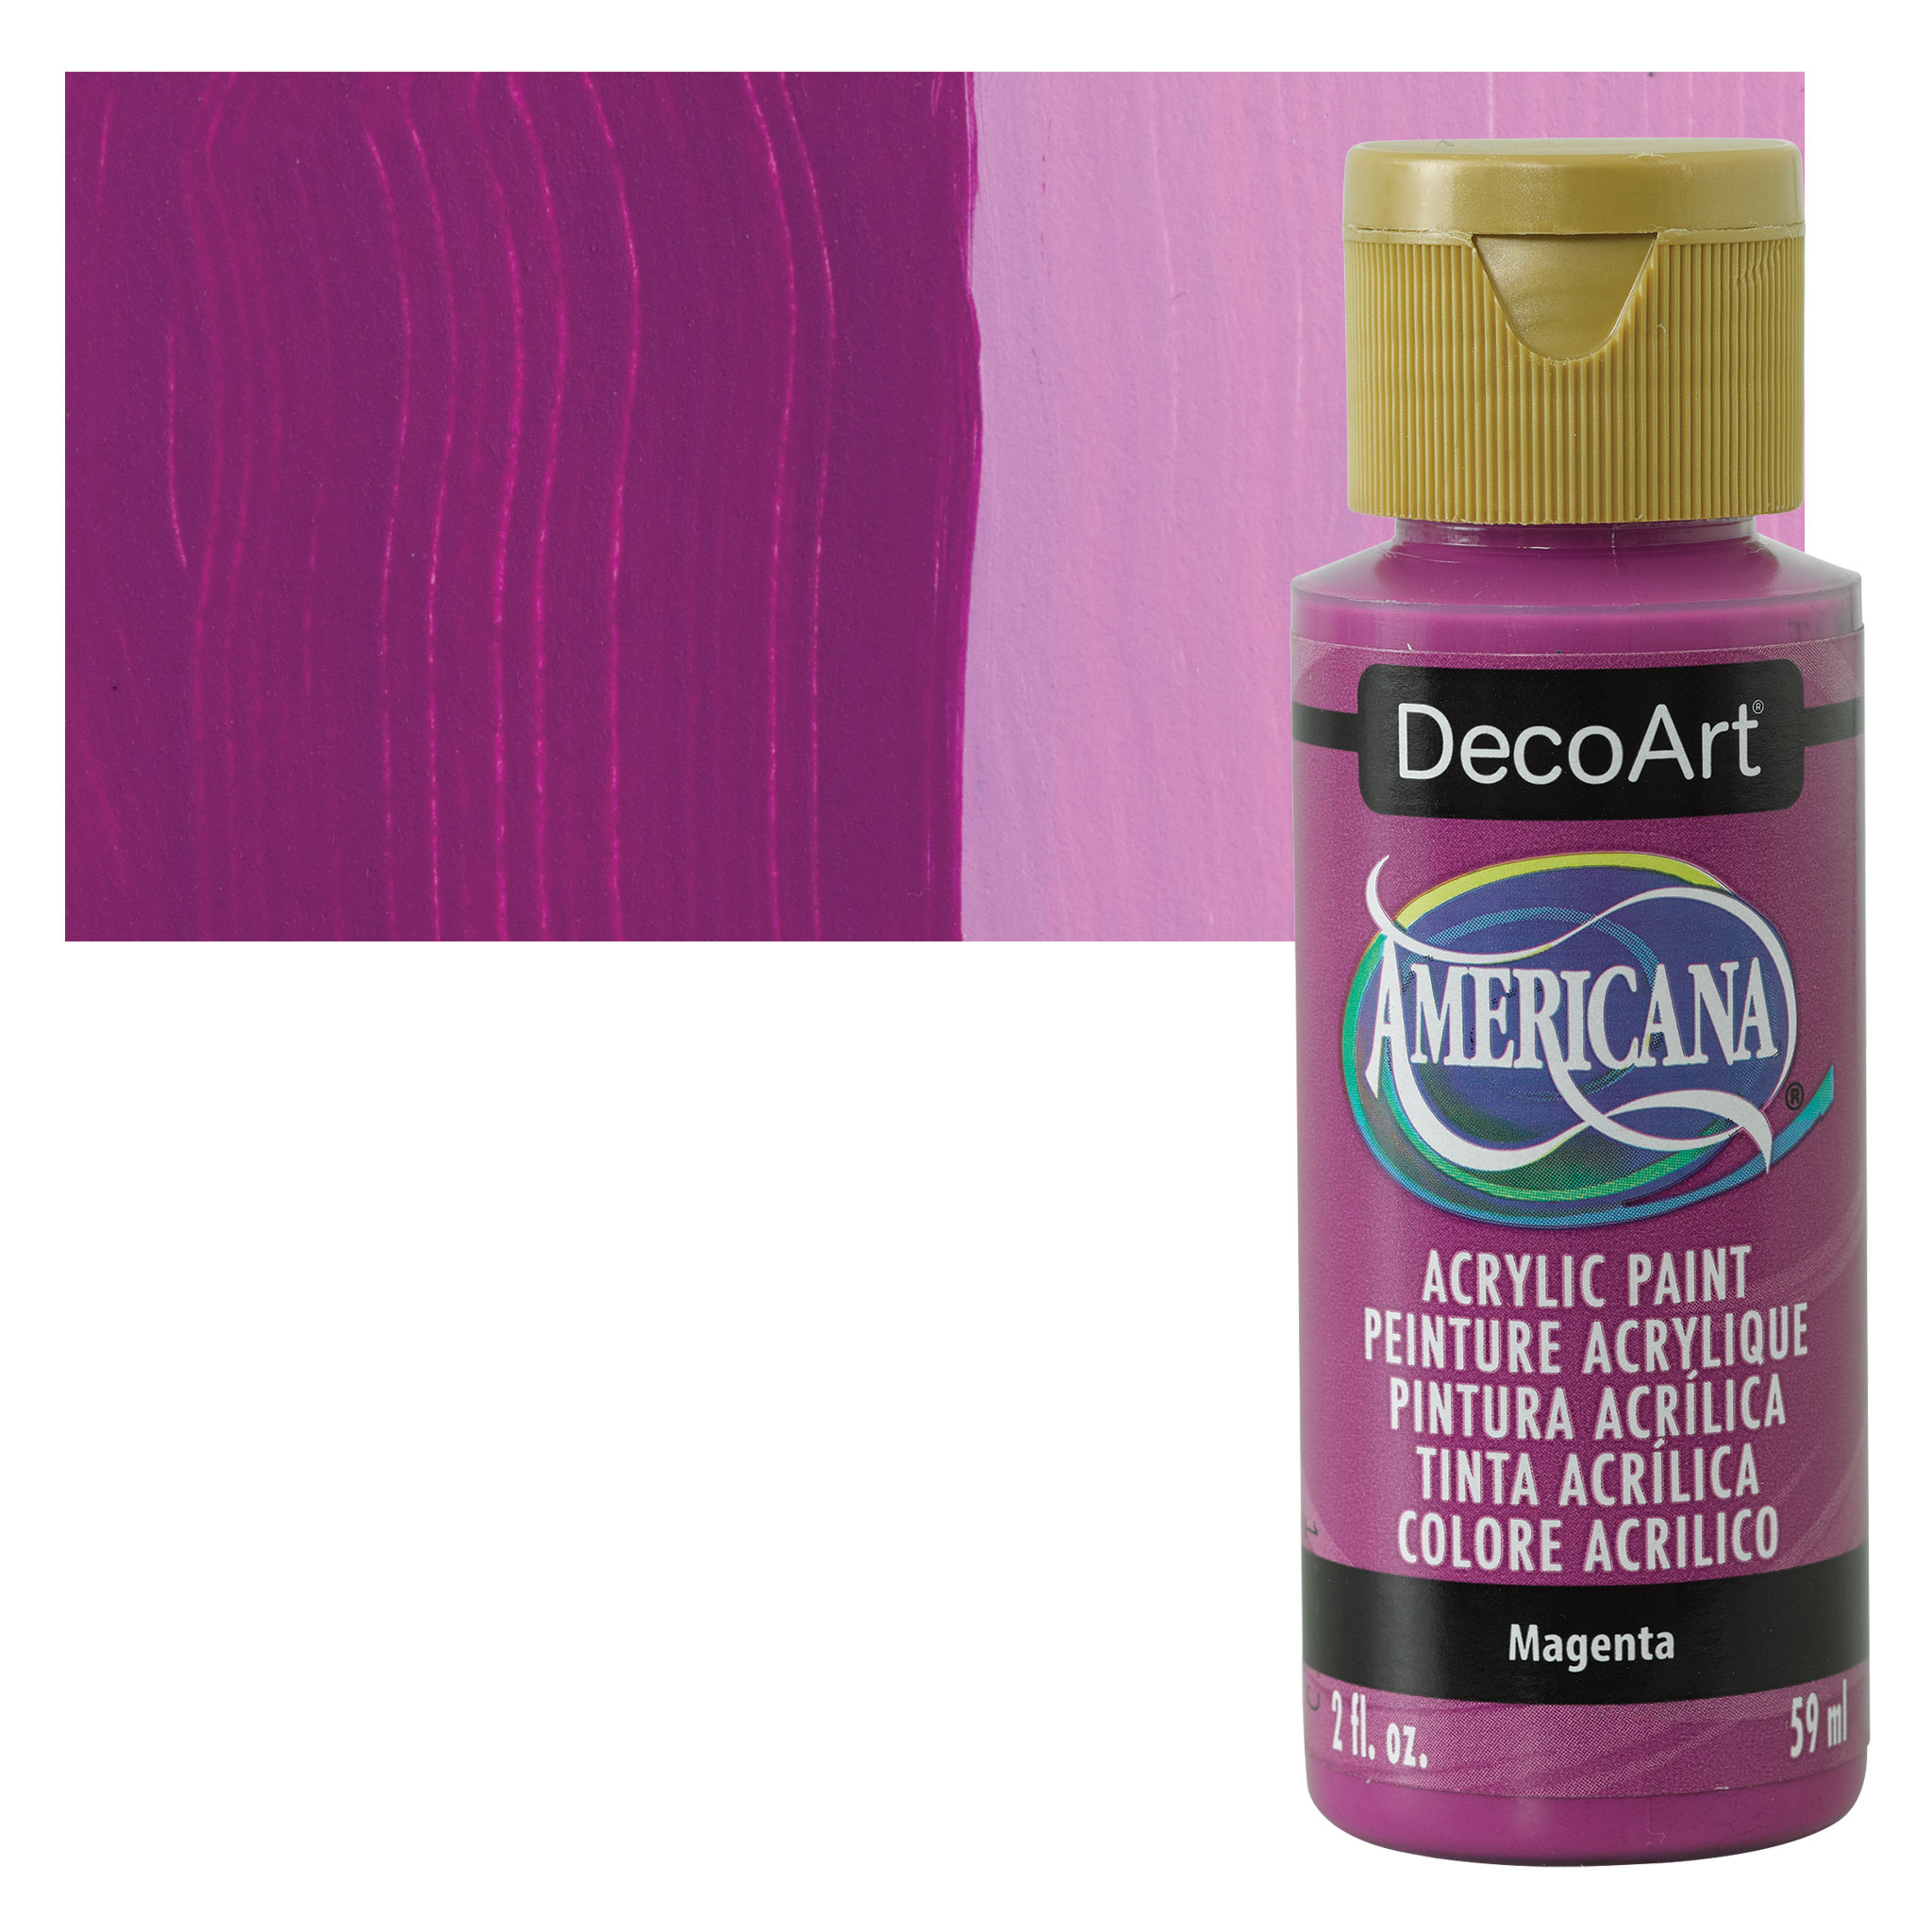 DecoArt Americana Acrylic Paint - Magenta, 2 oz